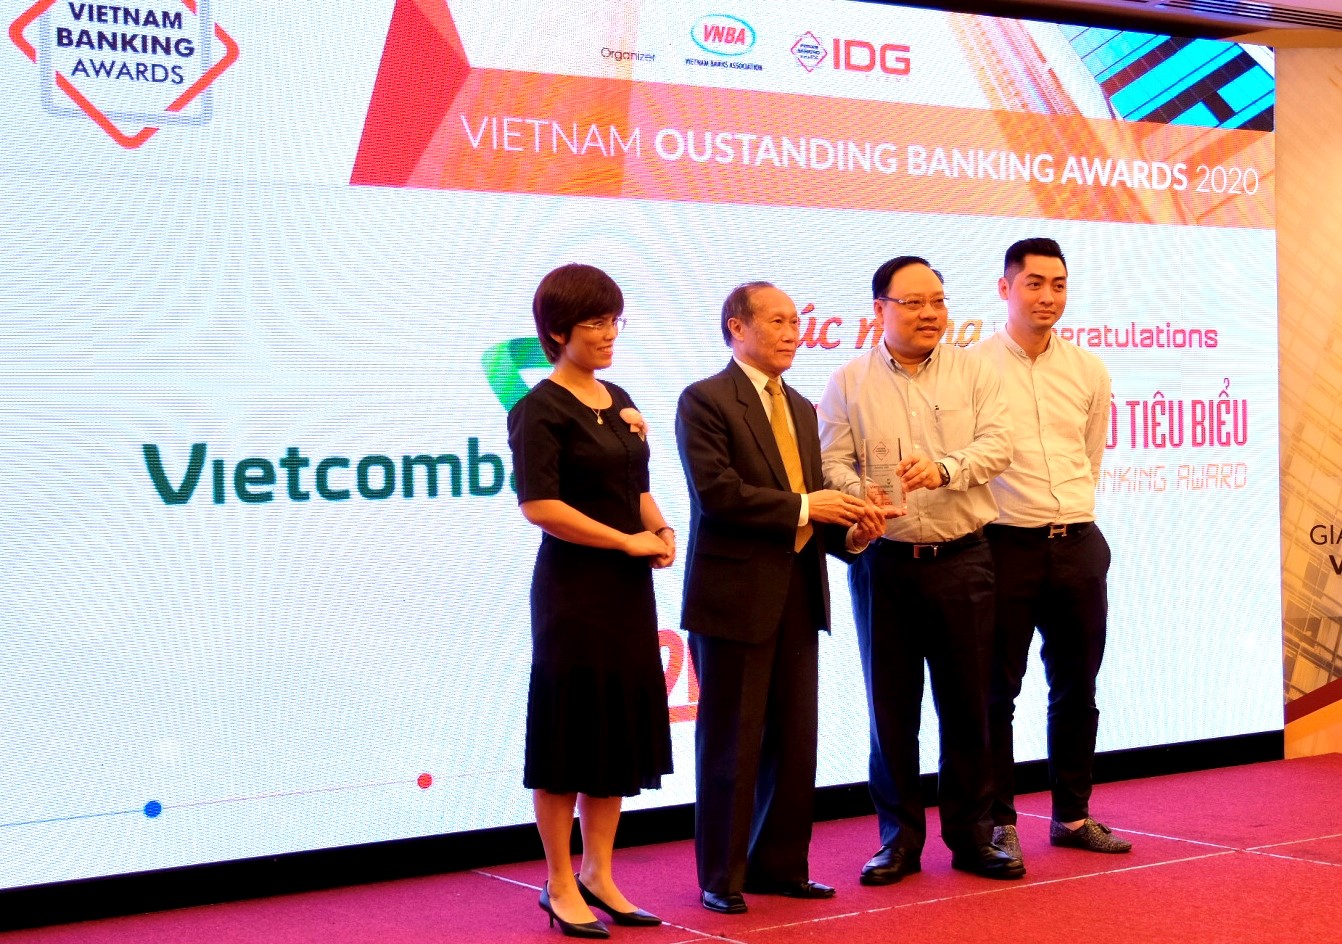 Ông Phạm Anh Tuấn – Thành viên Hội đồng quản trị (thứ 2 từ phải sang) cùng đại diện Vietcombank nhận giải thưởng “Ngân hàng chuyển đổi số tiêu biểu năm 2020”